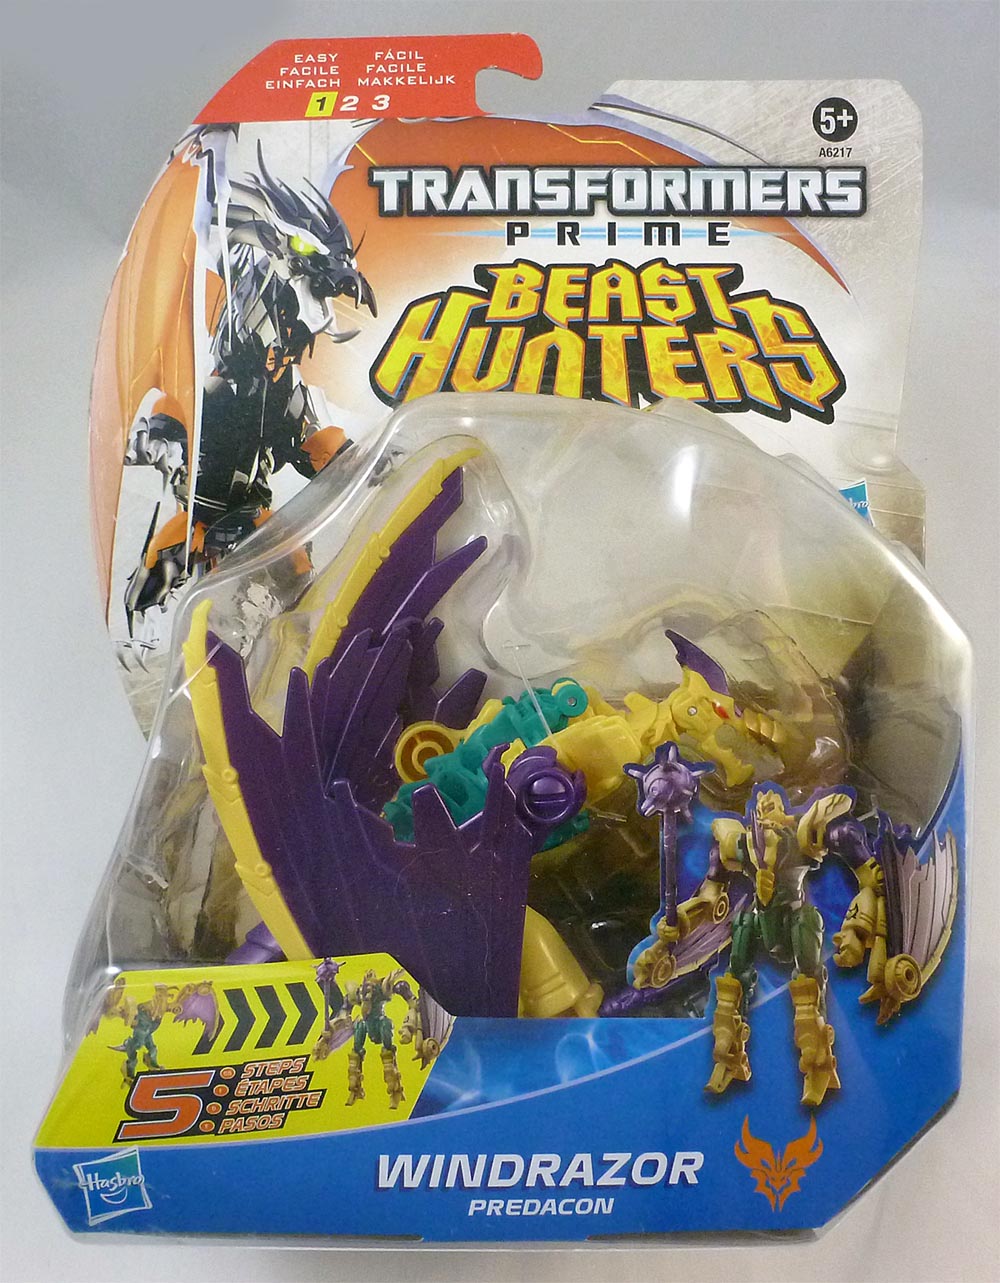 HASBRO Transformers Prime Beast Hunters – Windrazor Predacon (A6217)8